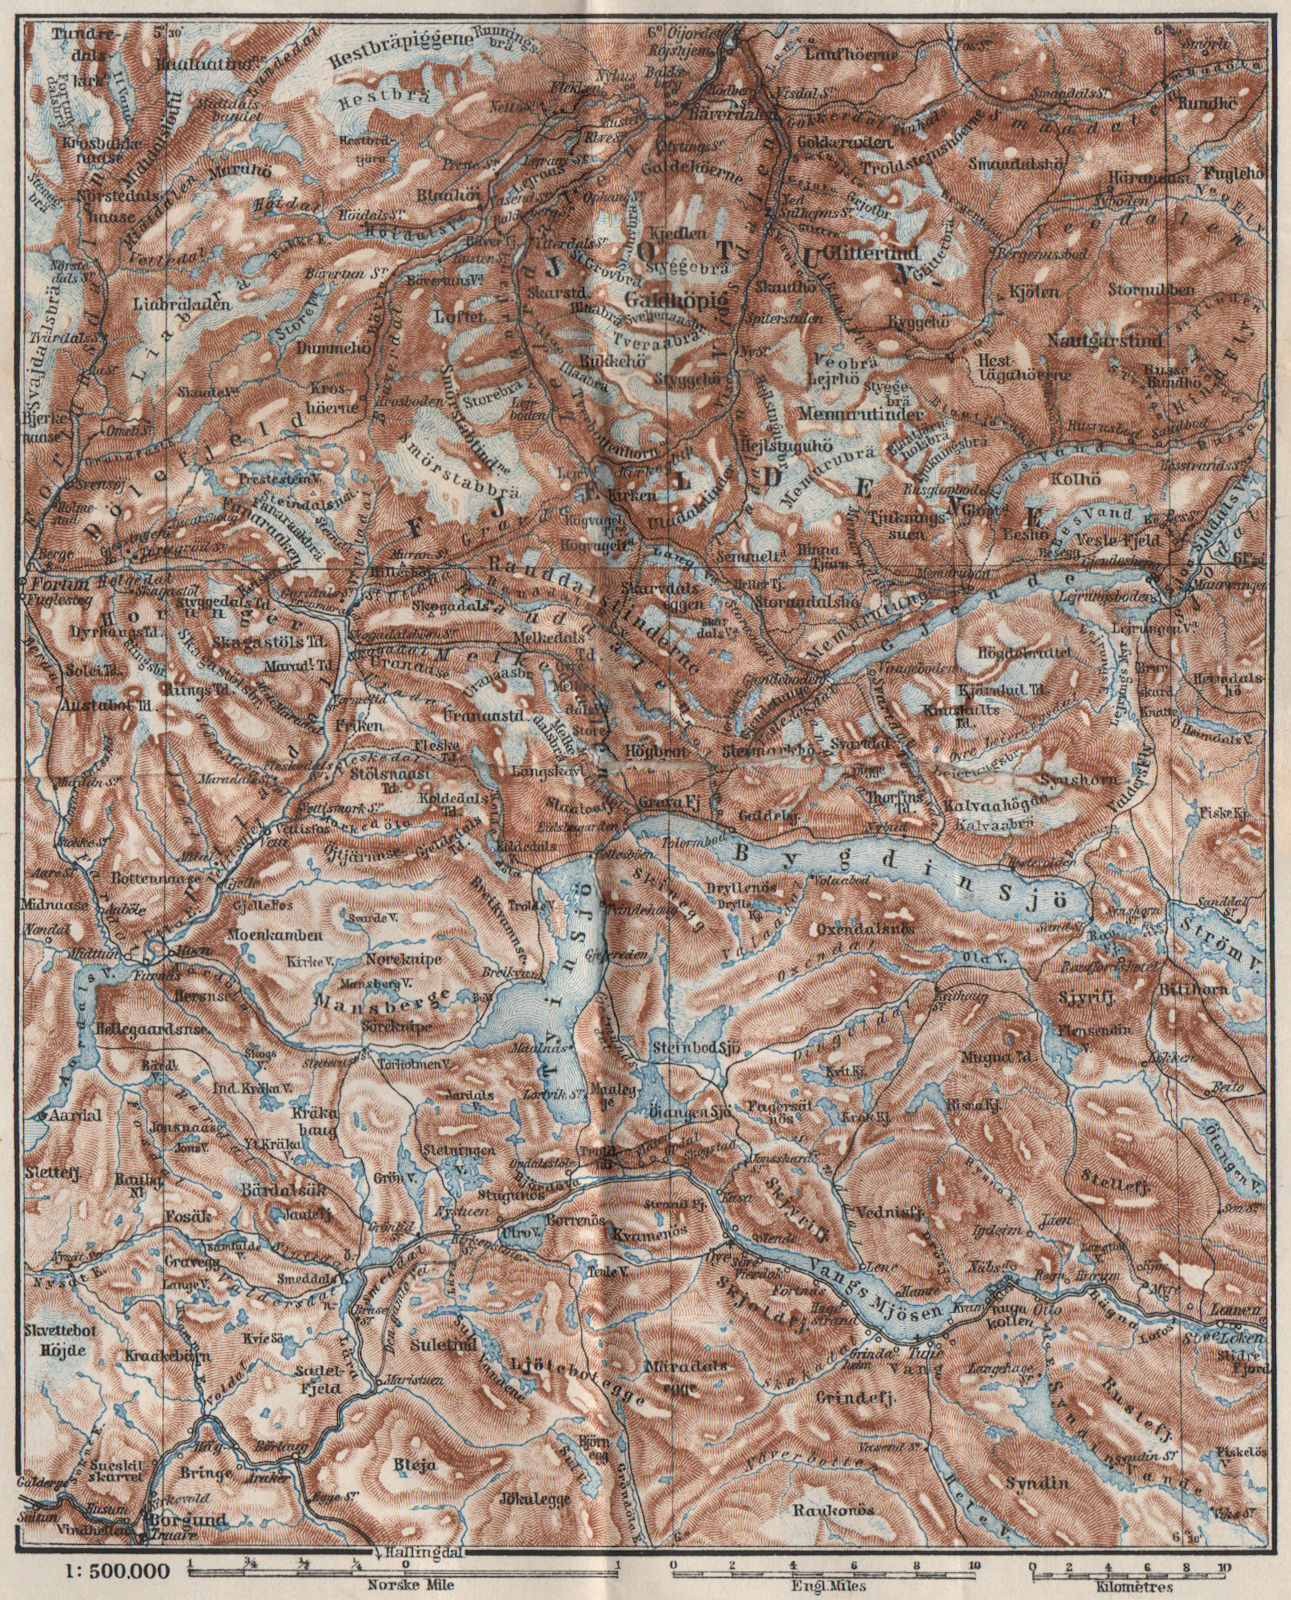 JOTUNHEIMEN Nasjonalpark topo-map. Norway kart. BAEDEKER 1885 old antique